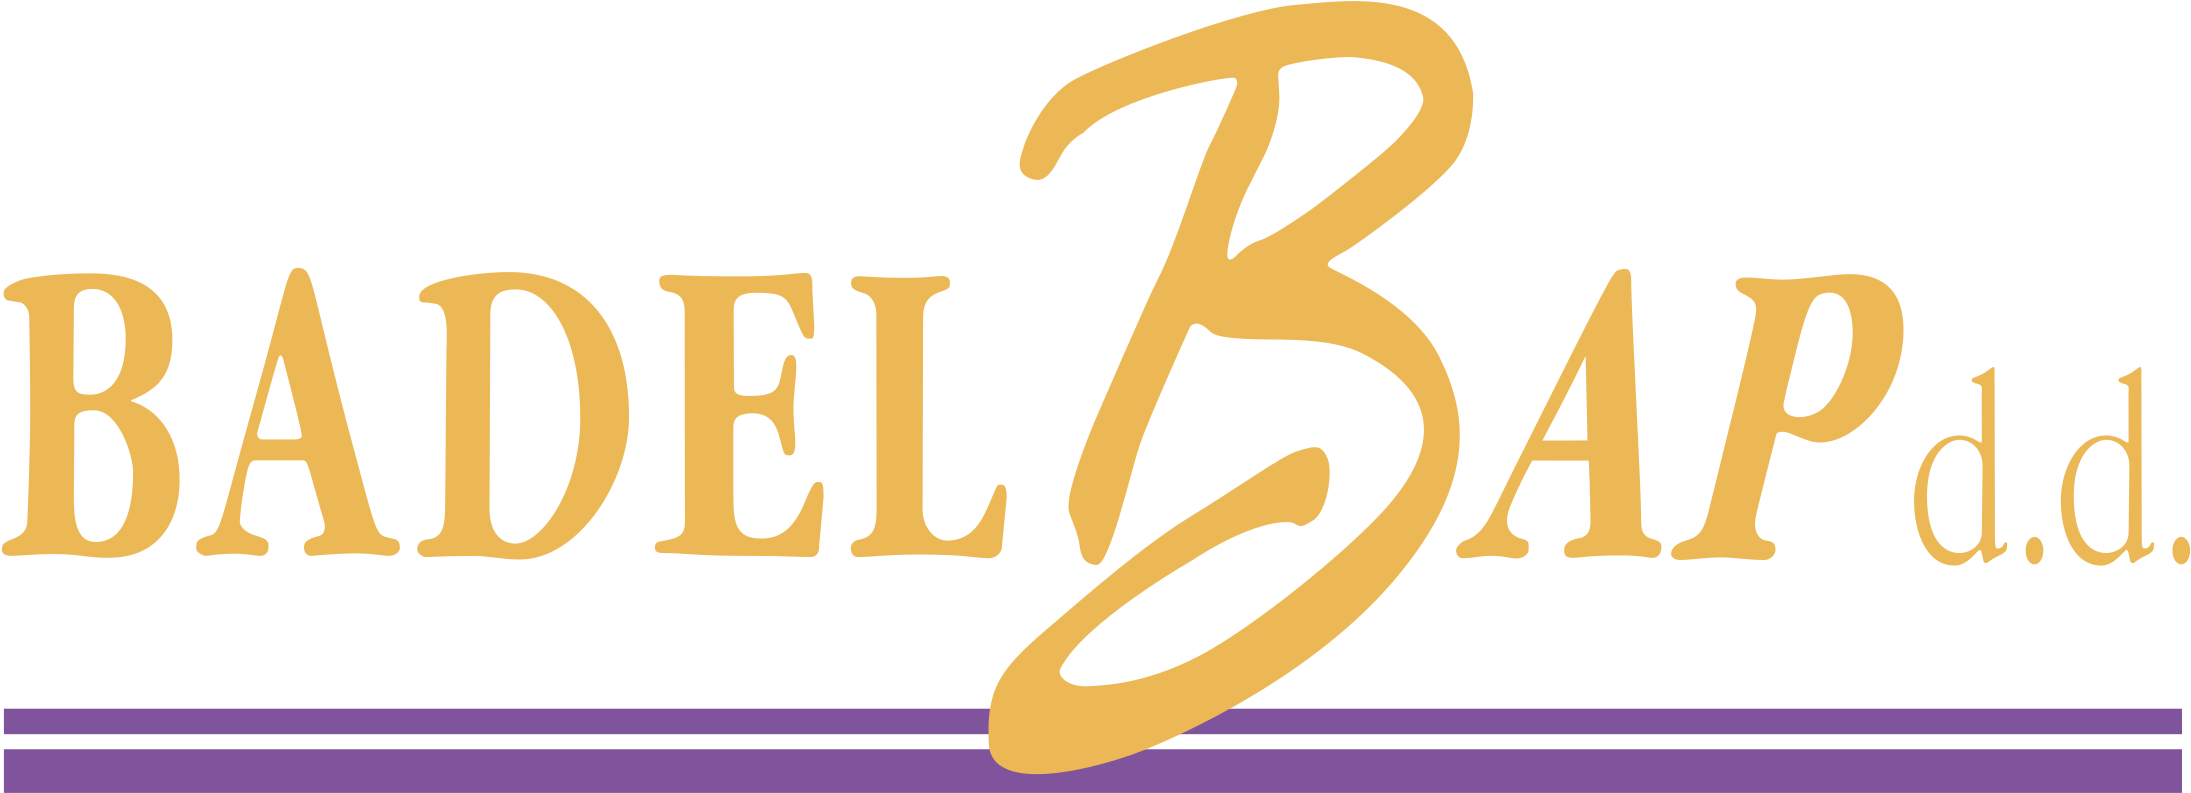 Badel Bap Logo Png Transparent - Euclidean Vector (2400x2400), Png Download